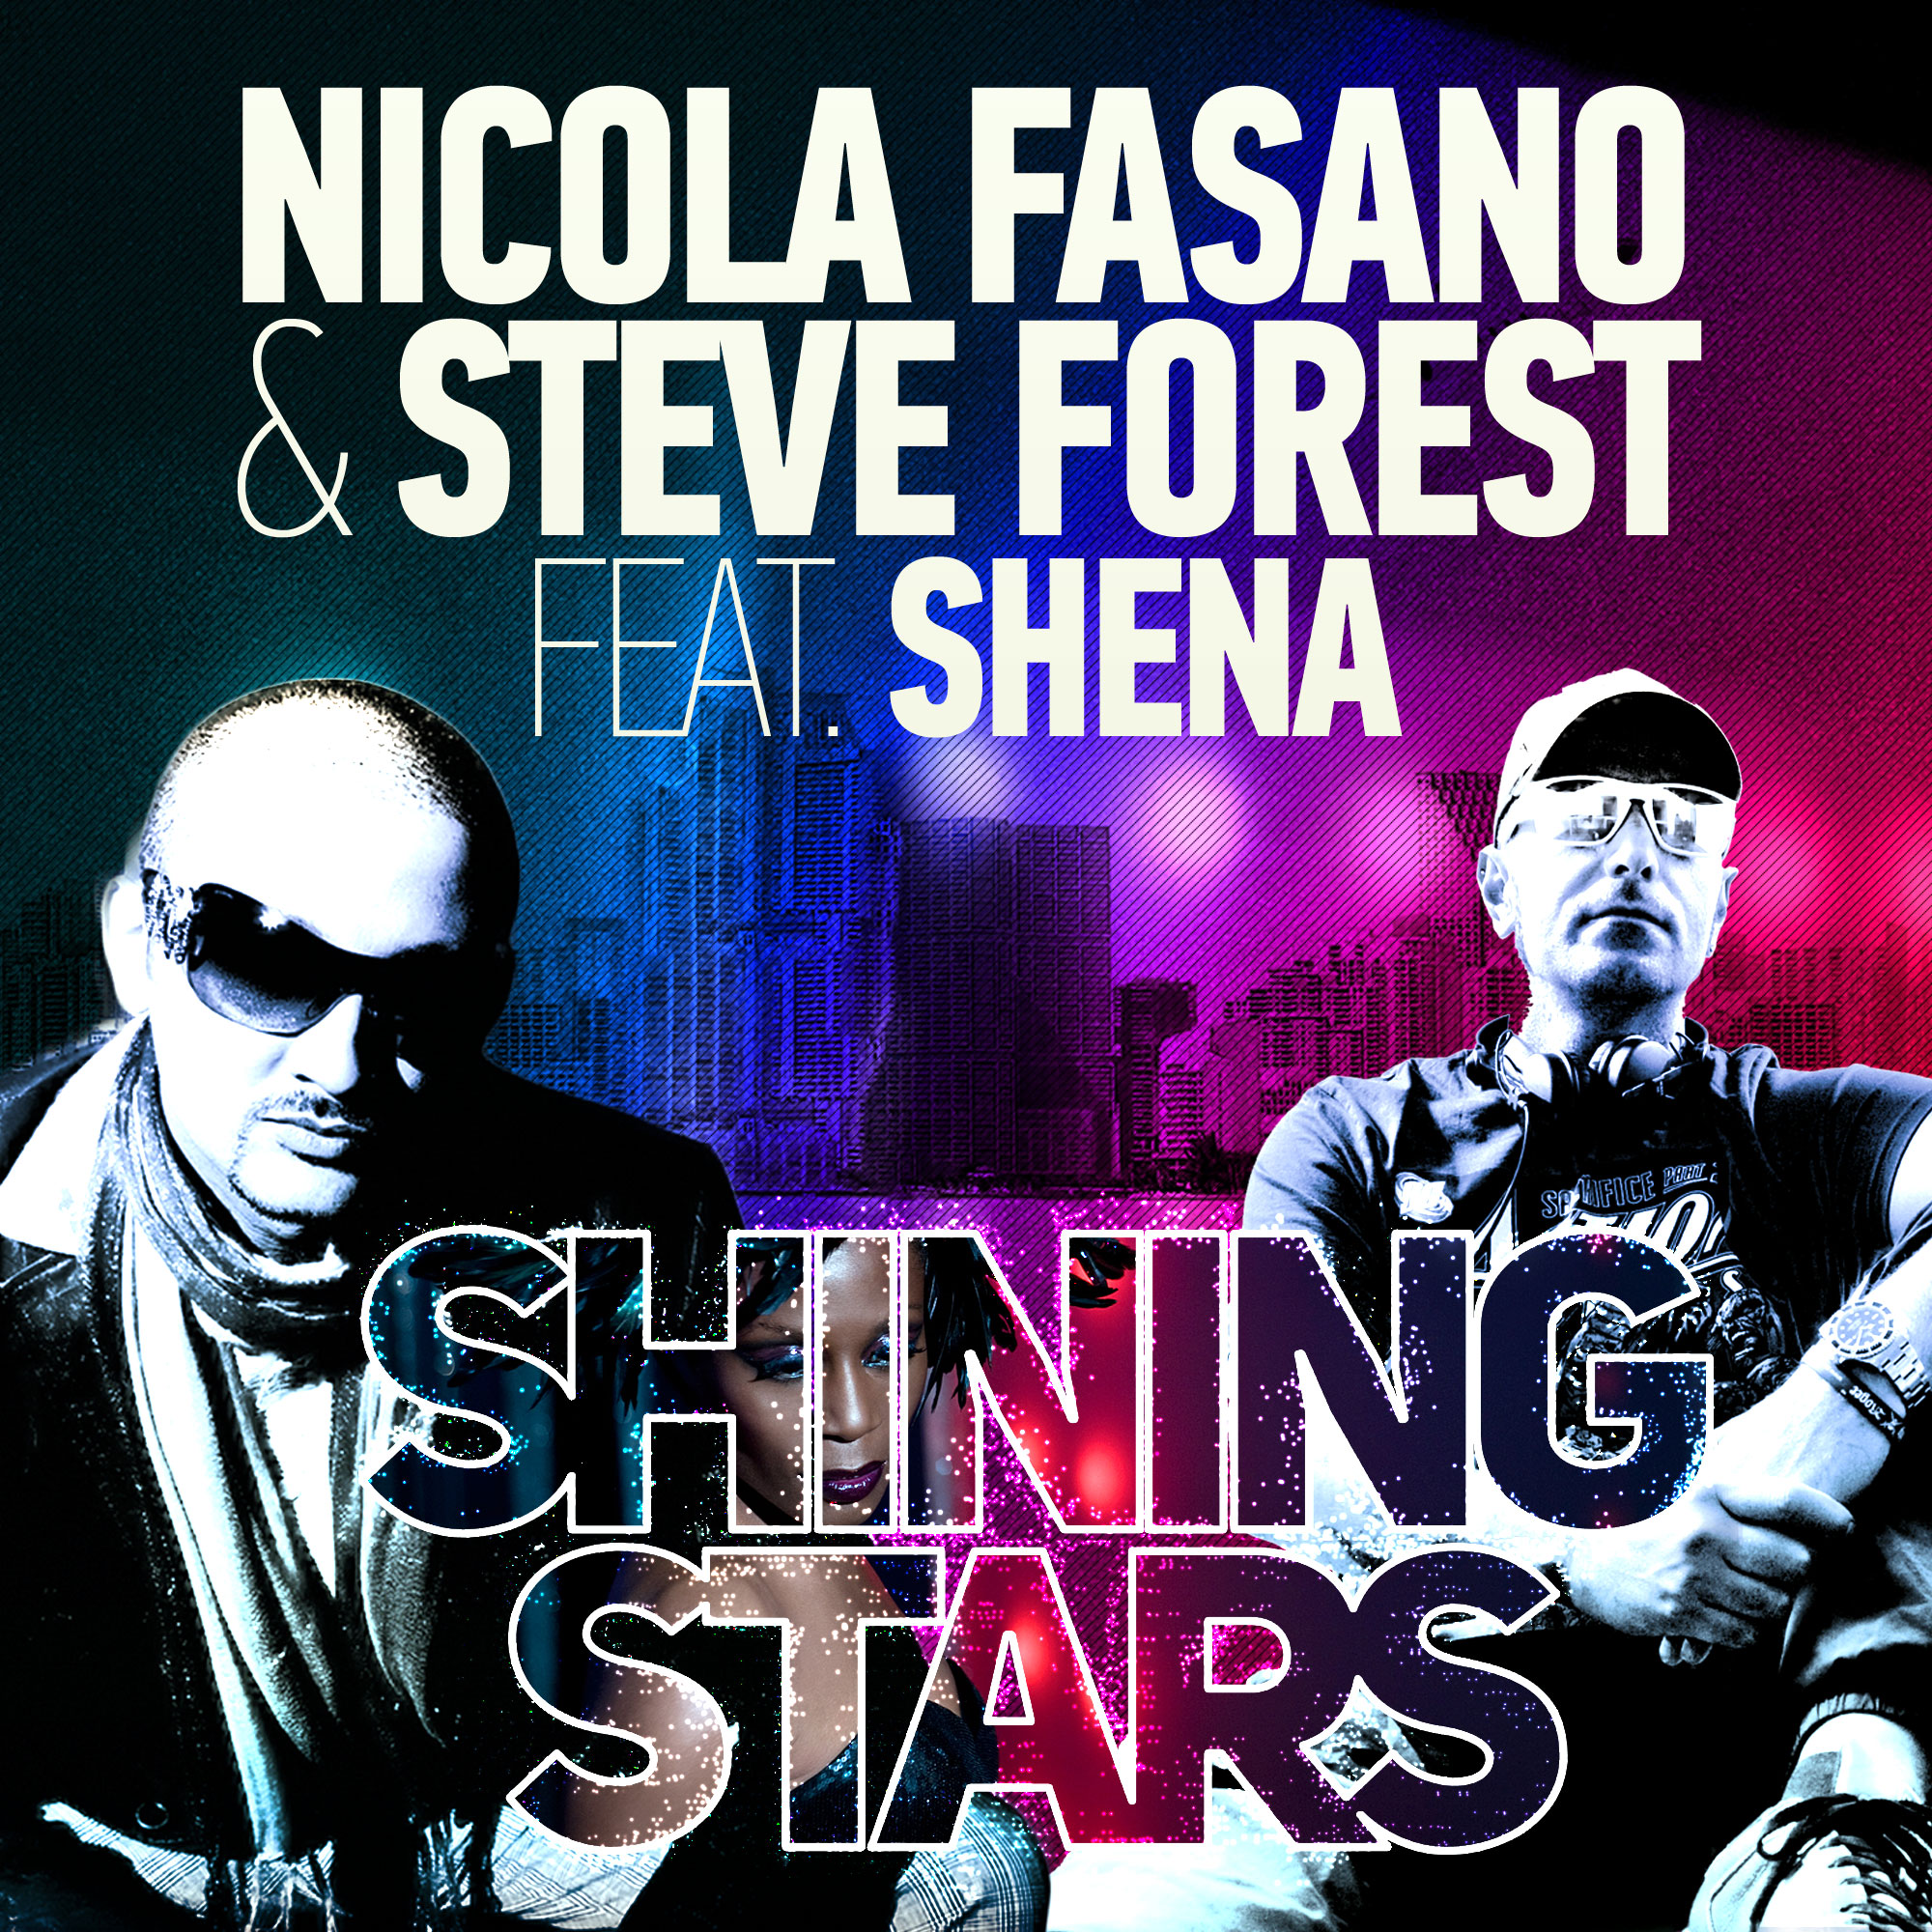 Nicola Fasano & Steve Forest feat. Shena – Shining Stars